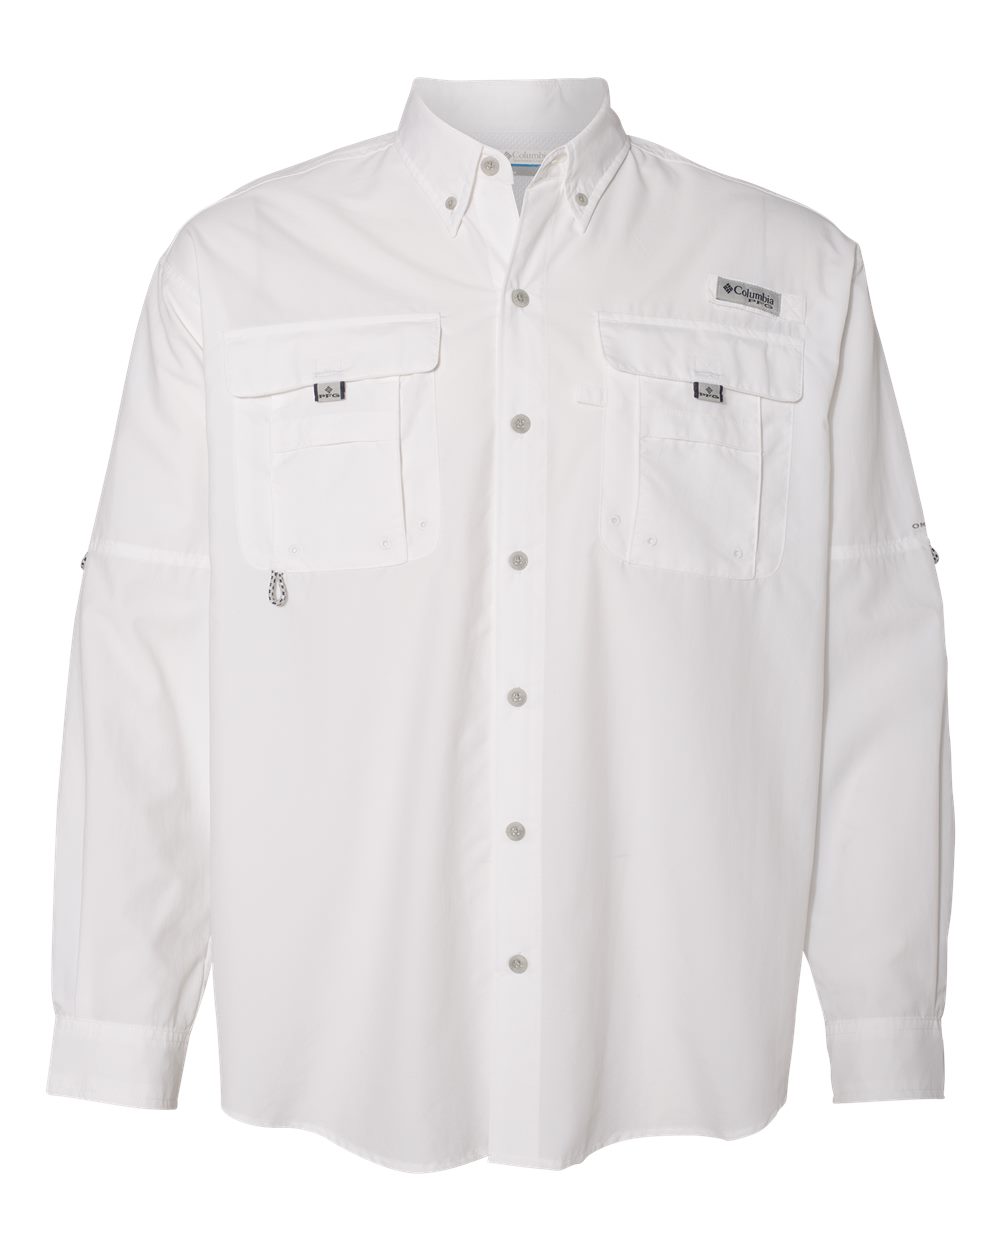 PFG Bahama™ II Long Sleeve Shirt-